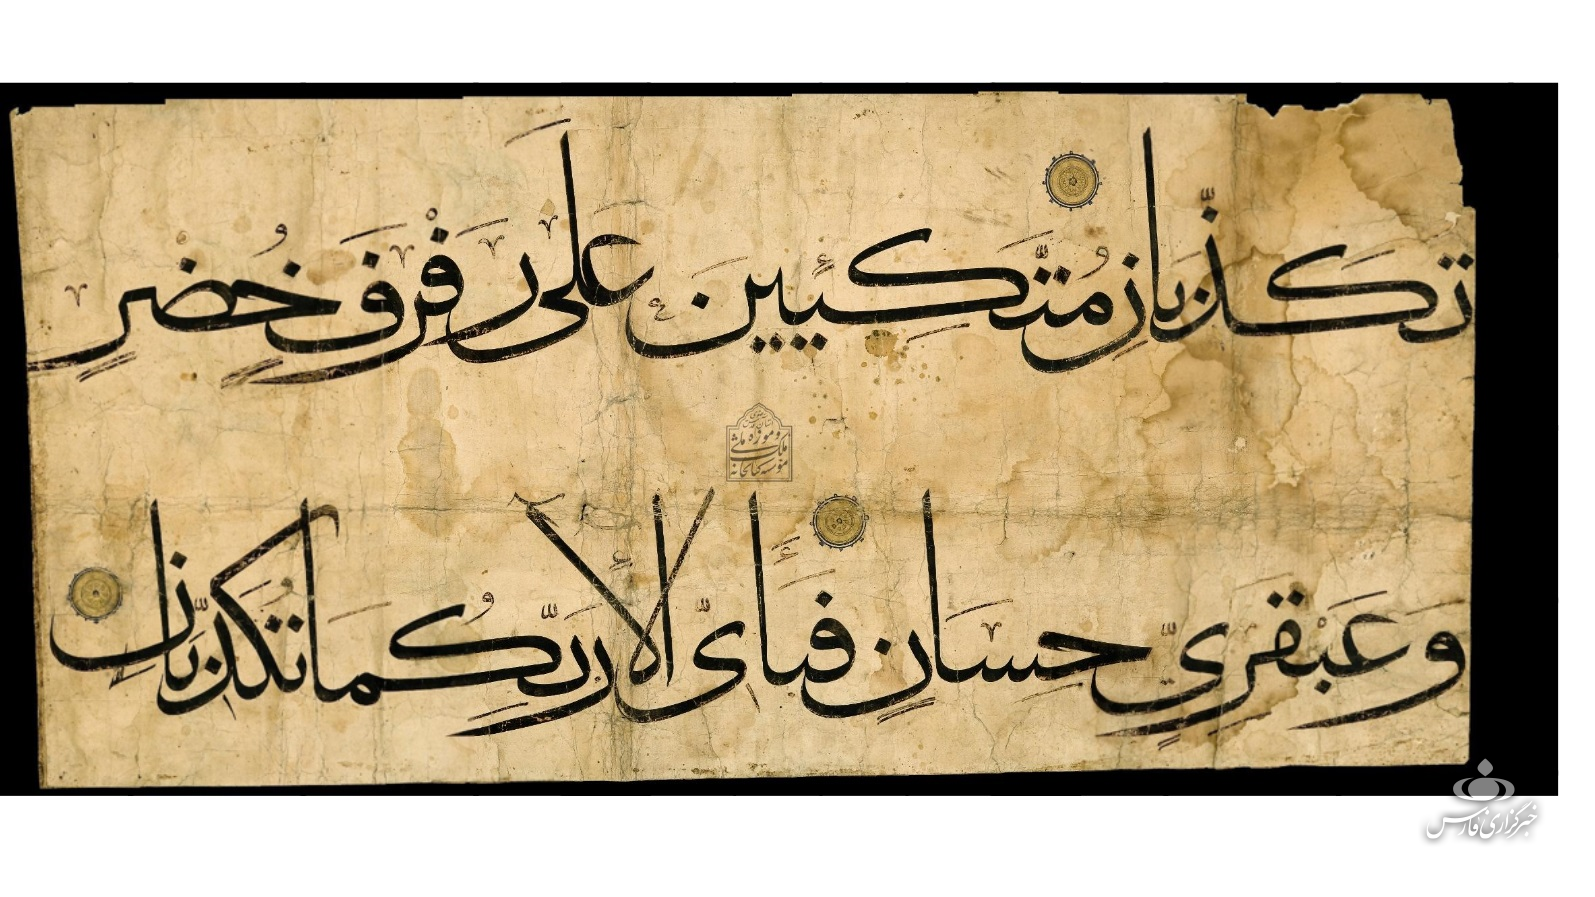 بزرگترین قرآن خطی جهان کجاست + تصویر